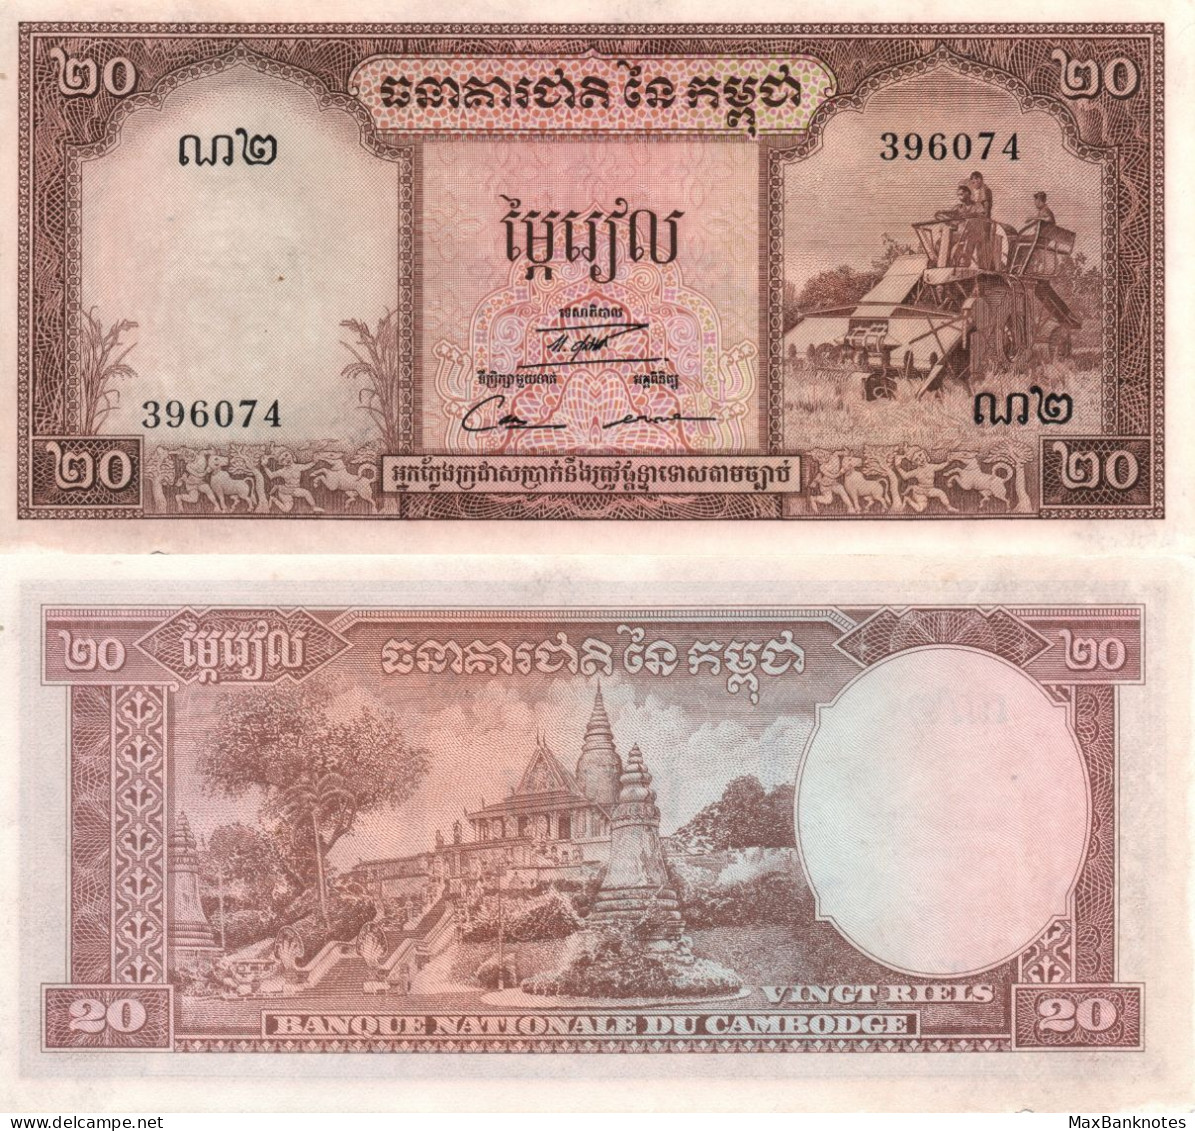 Cambodia / 20 Riels / 1956 / P-5(d) / AUNC - Cambodia